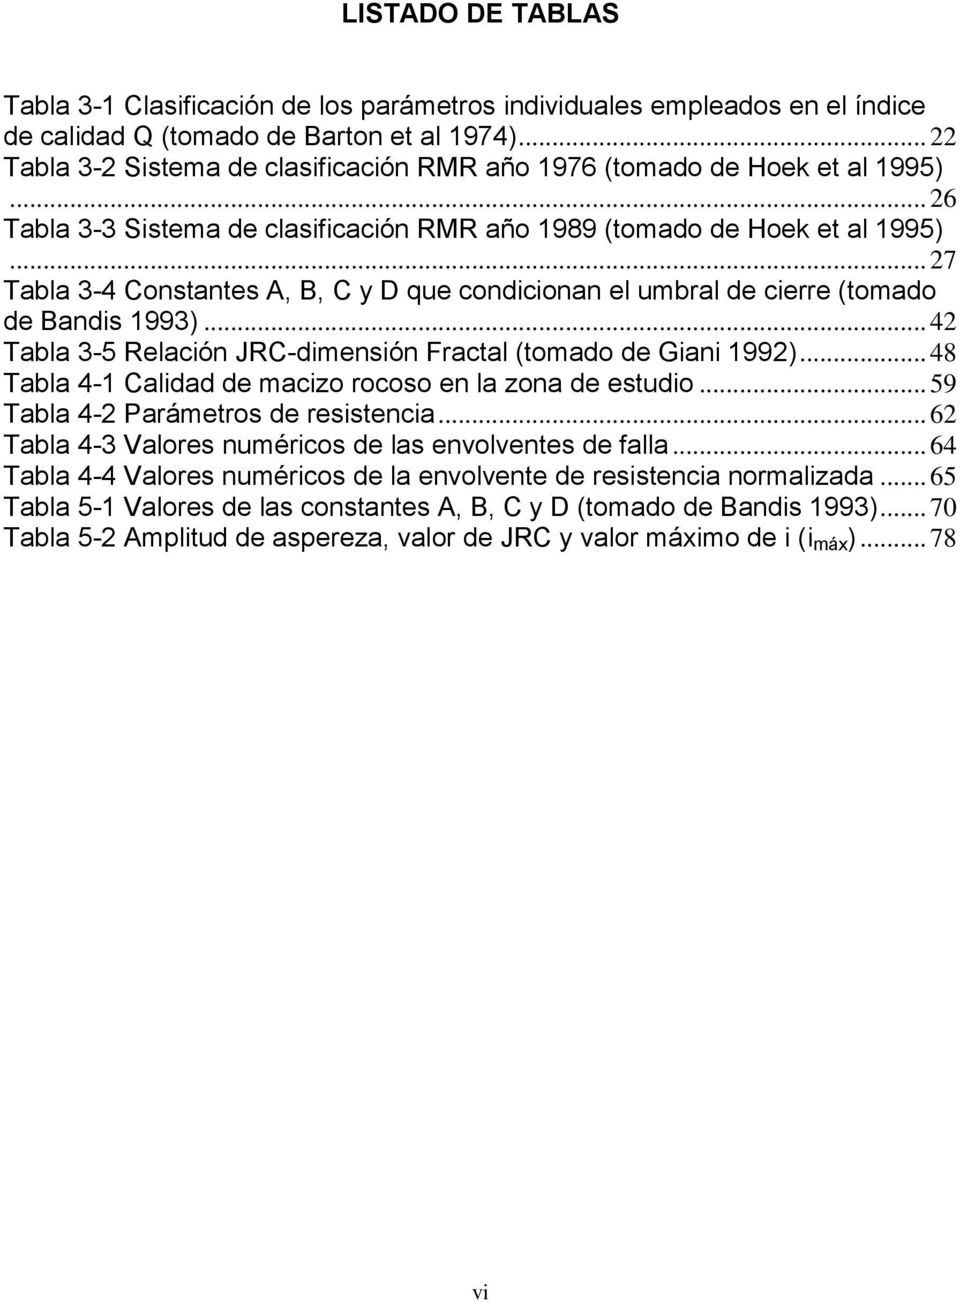 .. 27 Tabla 3-4 Constantes A, B, C y D que condicionan el umbral de cierre (tomado de Bandis 1993)... 42 Tabla 3-5 Relación JRC-dimensión Fractal (tomado de Giani 1992).